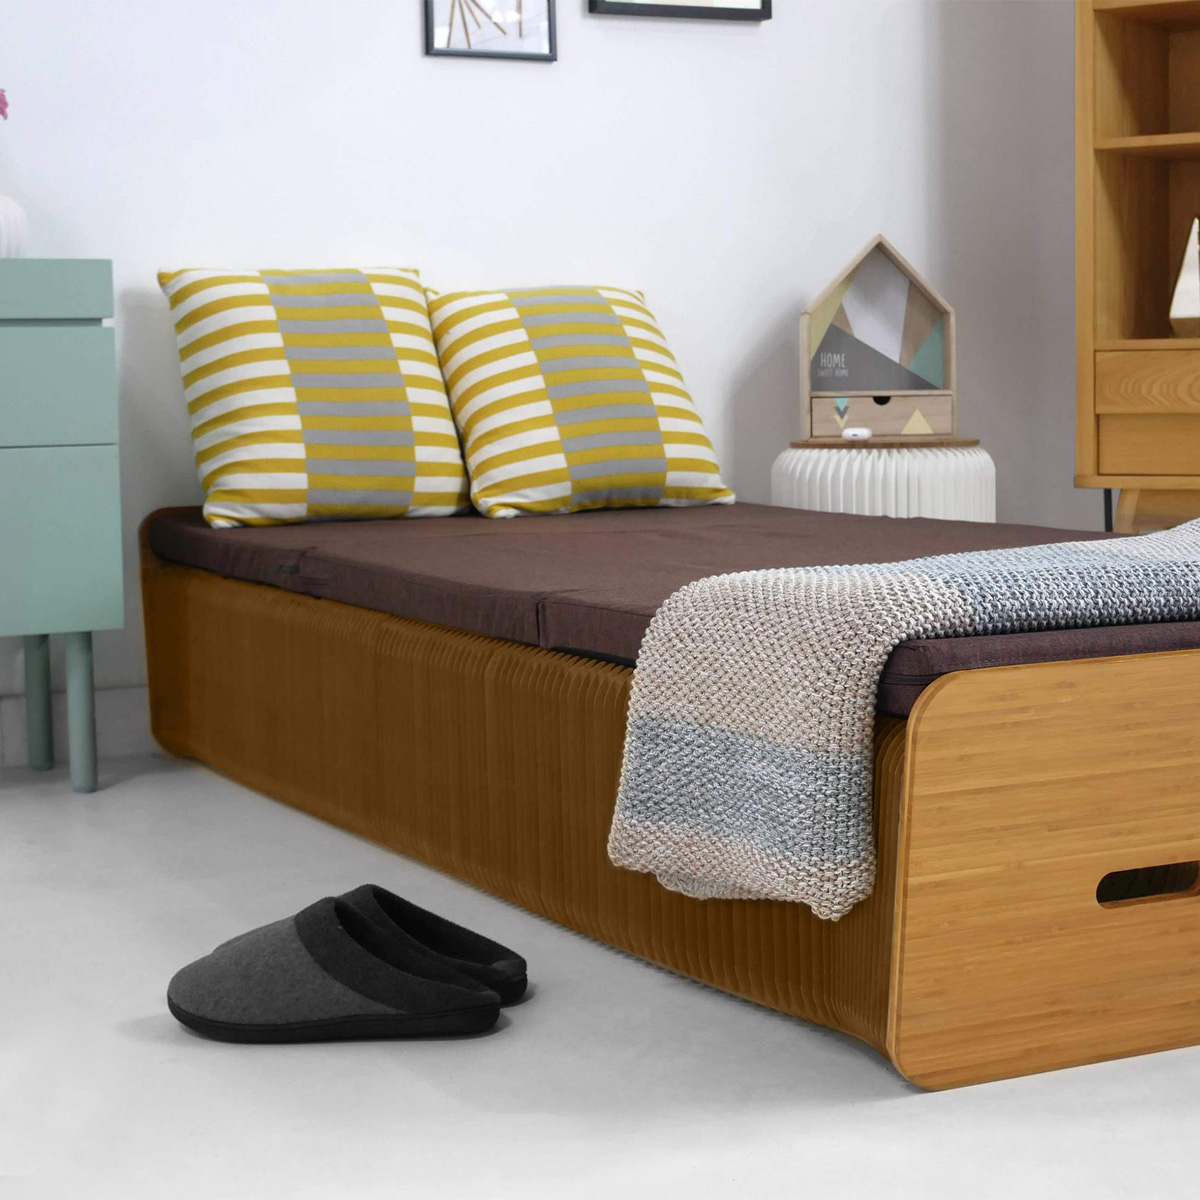 Ici, le lit en carton alvéolé est déplié et va jusqu'à 2 mètres. Le matelas est inclu avec et le lit supporte jusqu'à 500 kgs. Vous pouvez dormir dessus en toute tranquilité et confort.